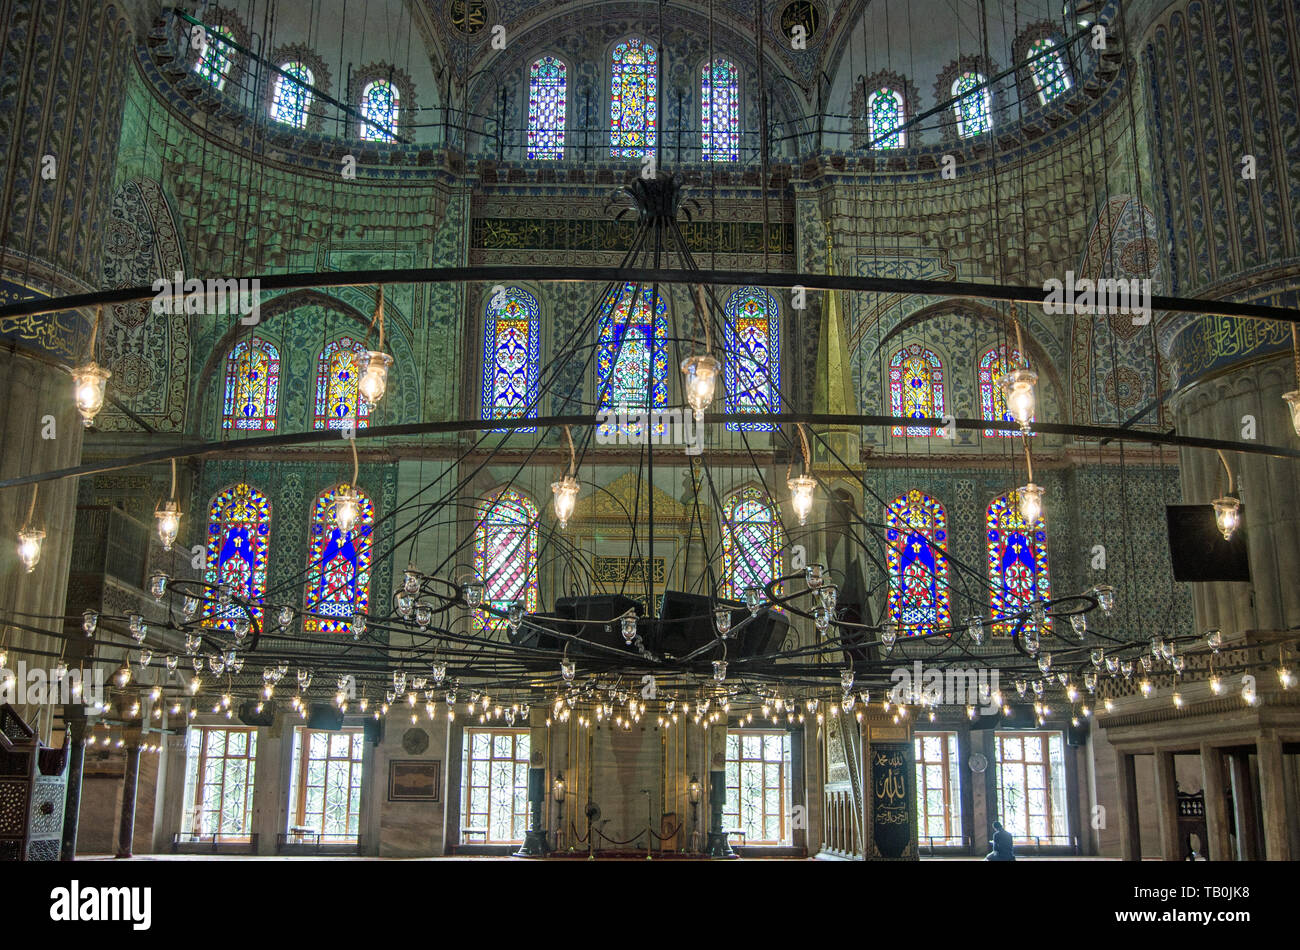 ISTANBUL, Türkei - 6 Juni, 2016: friedliche innere mit Glasmalerei und Lampen an der Blauen Moschee, der Sultan Ahmet Camii, in Istanbul, Türkei. Stockfoto